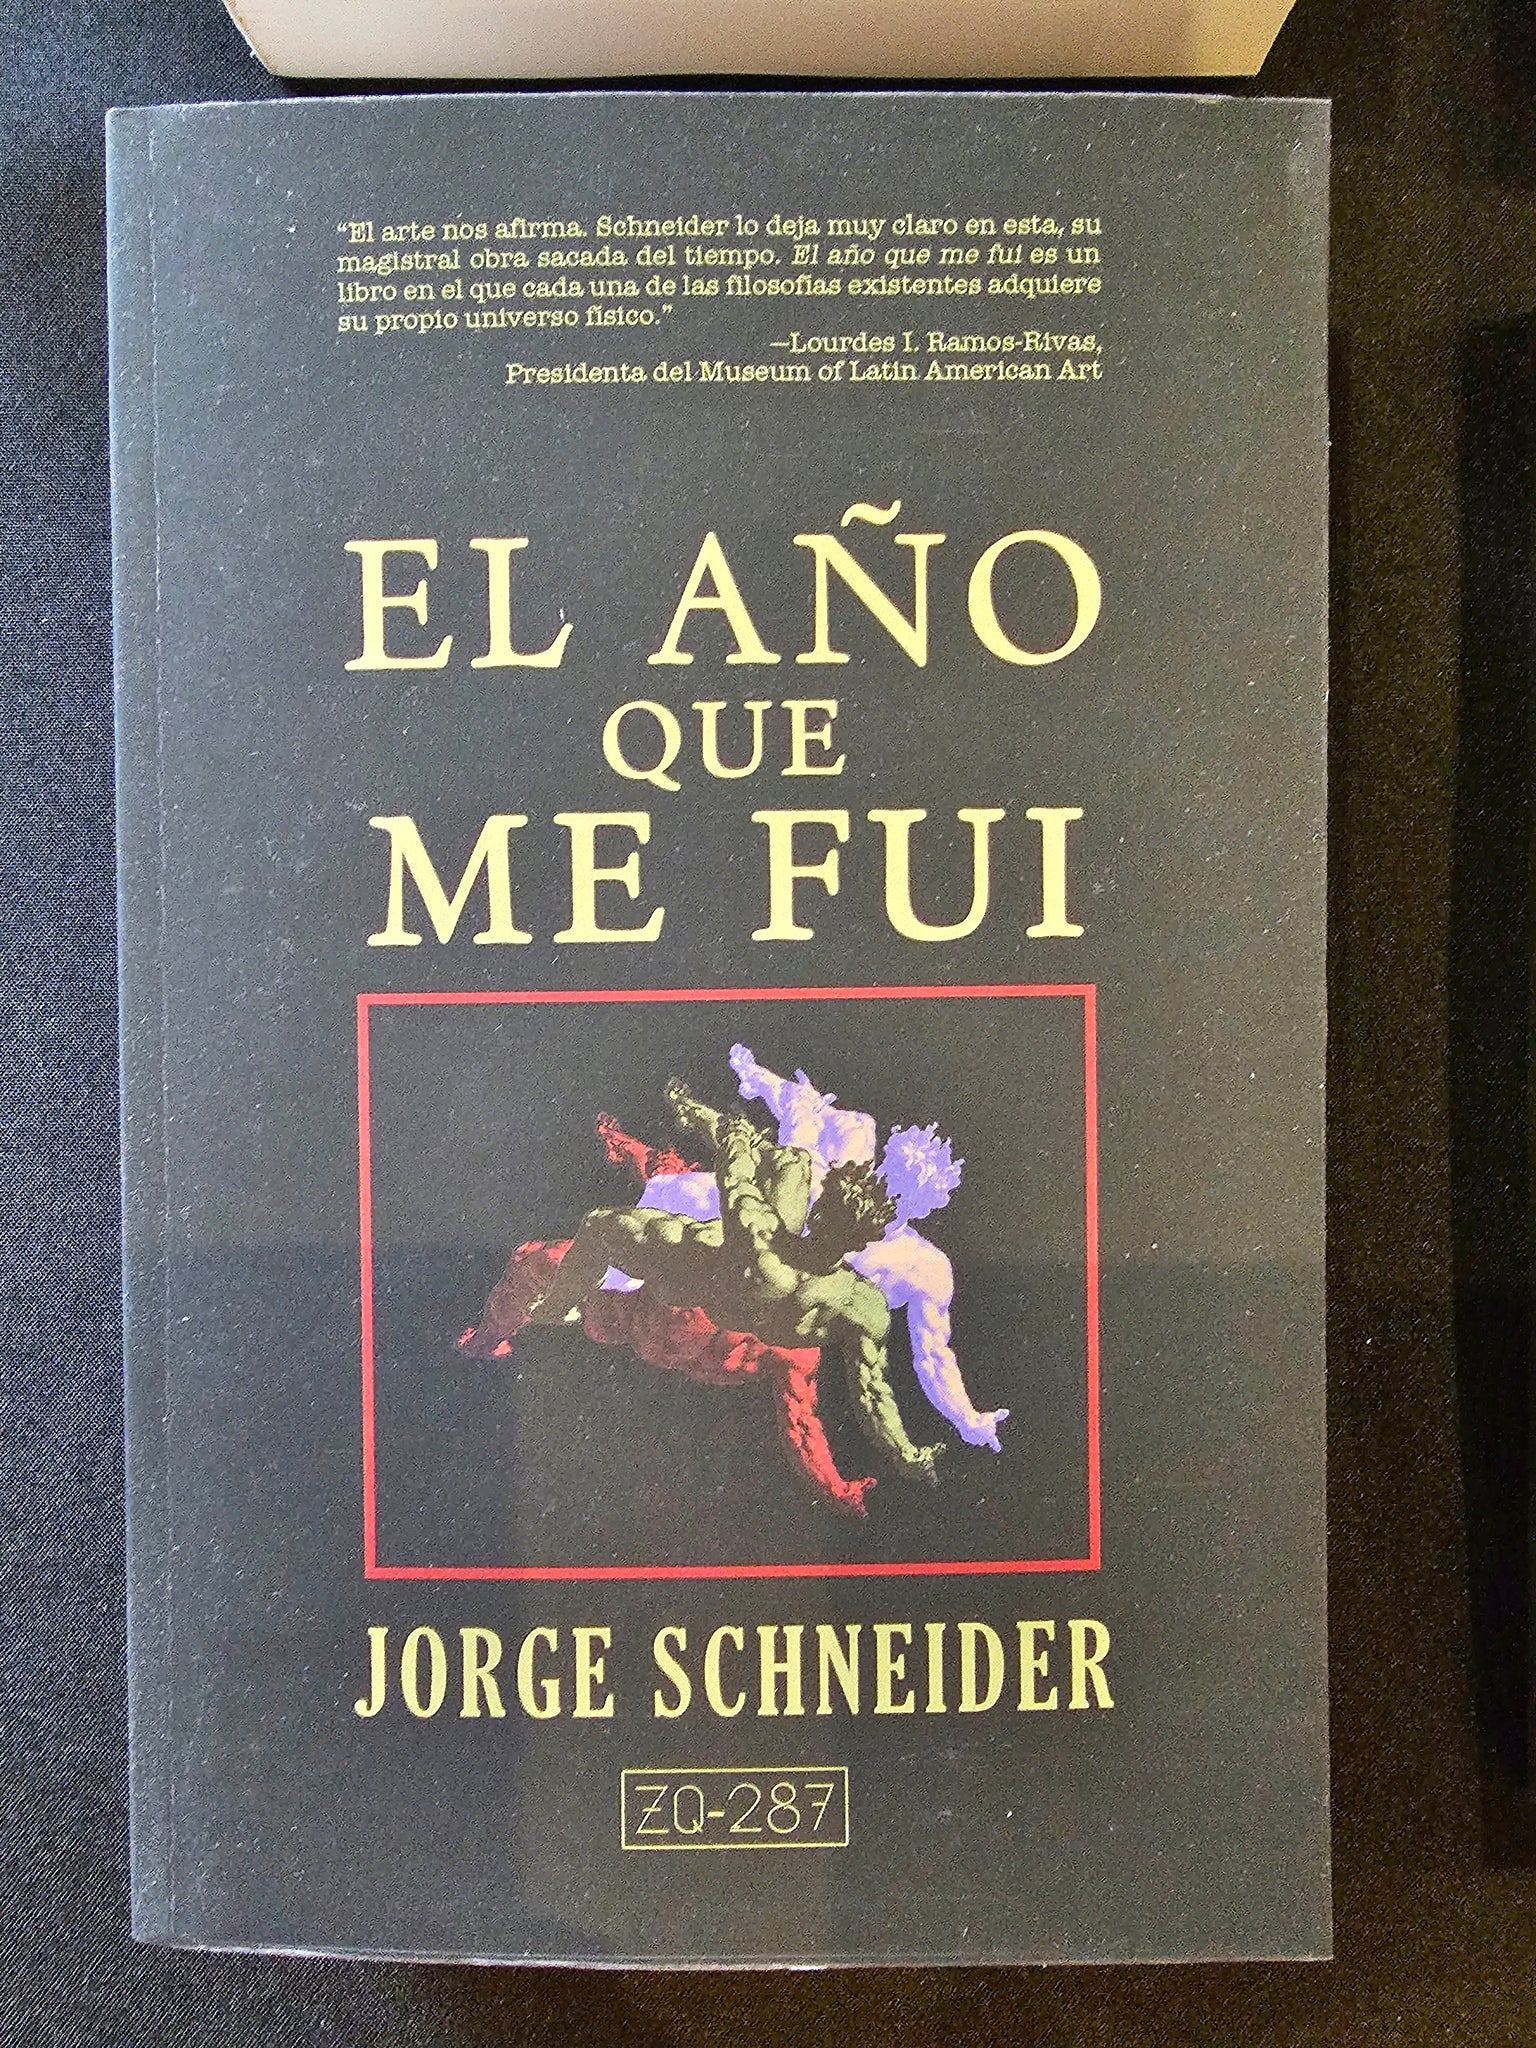 EL AÑO QUE ME FUI by Jorge Schneider